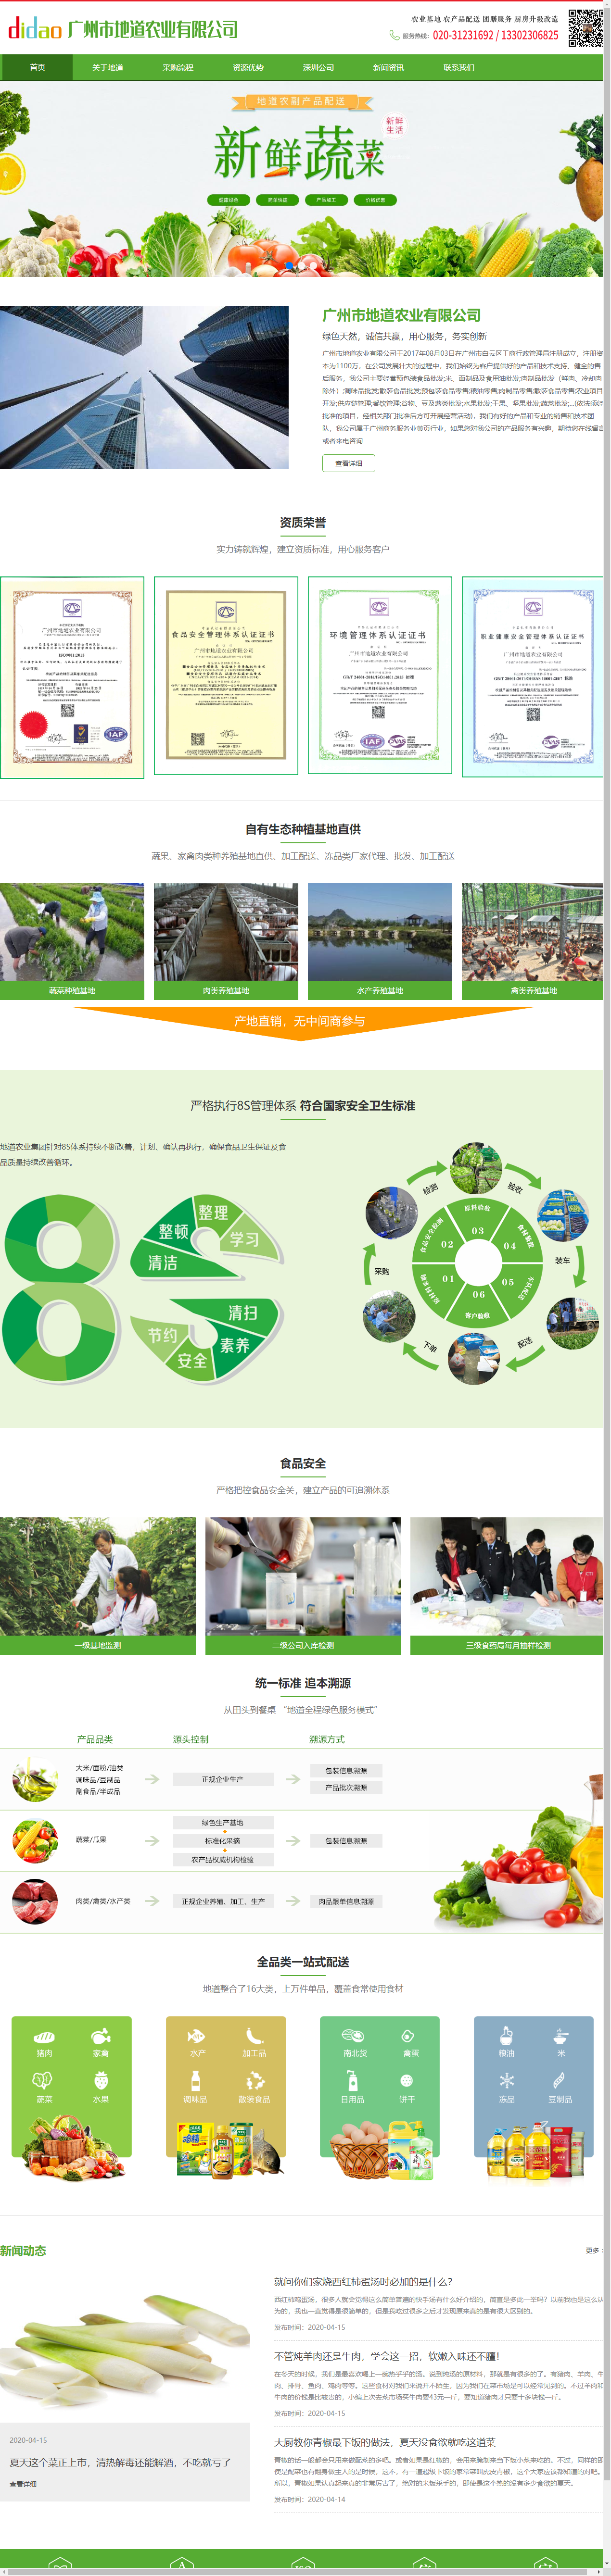 广州市地道农业有限公司网站案例